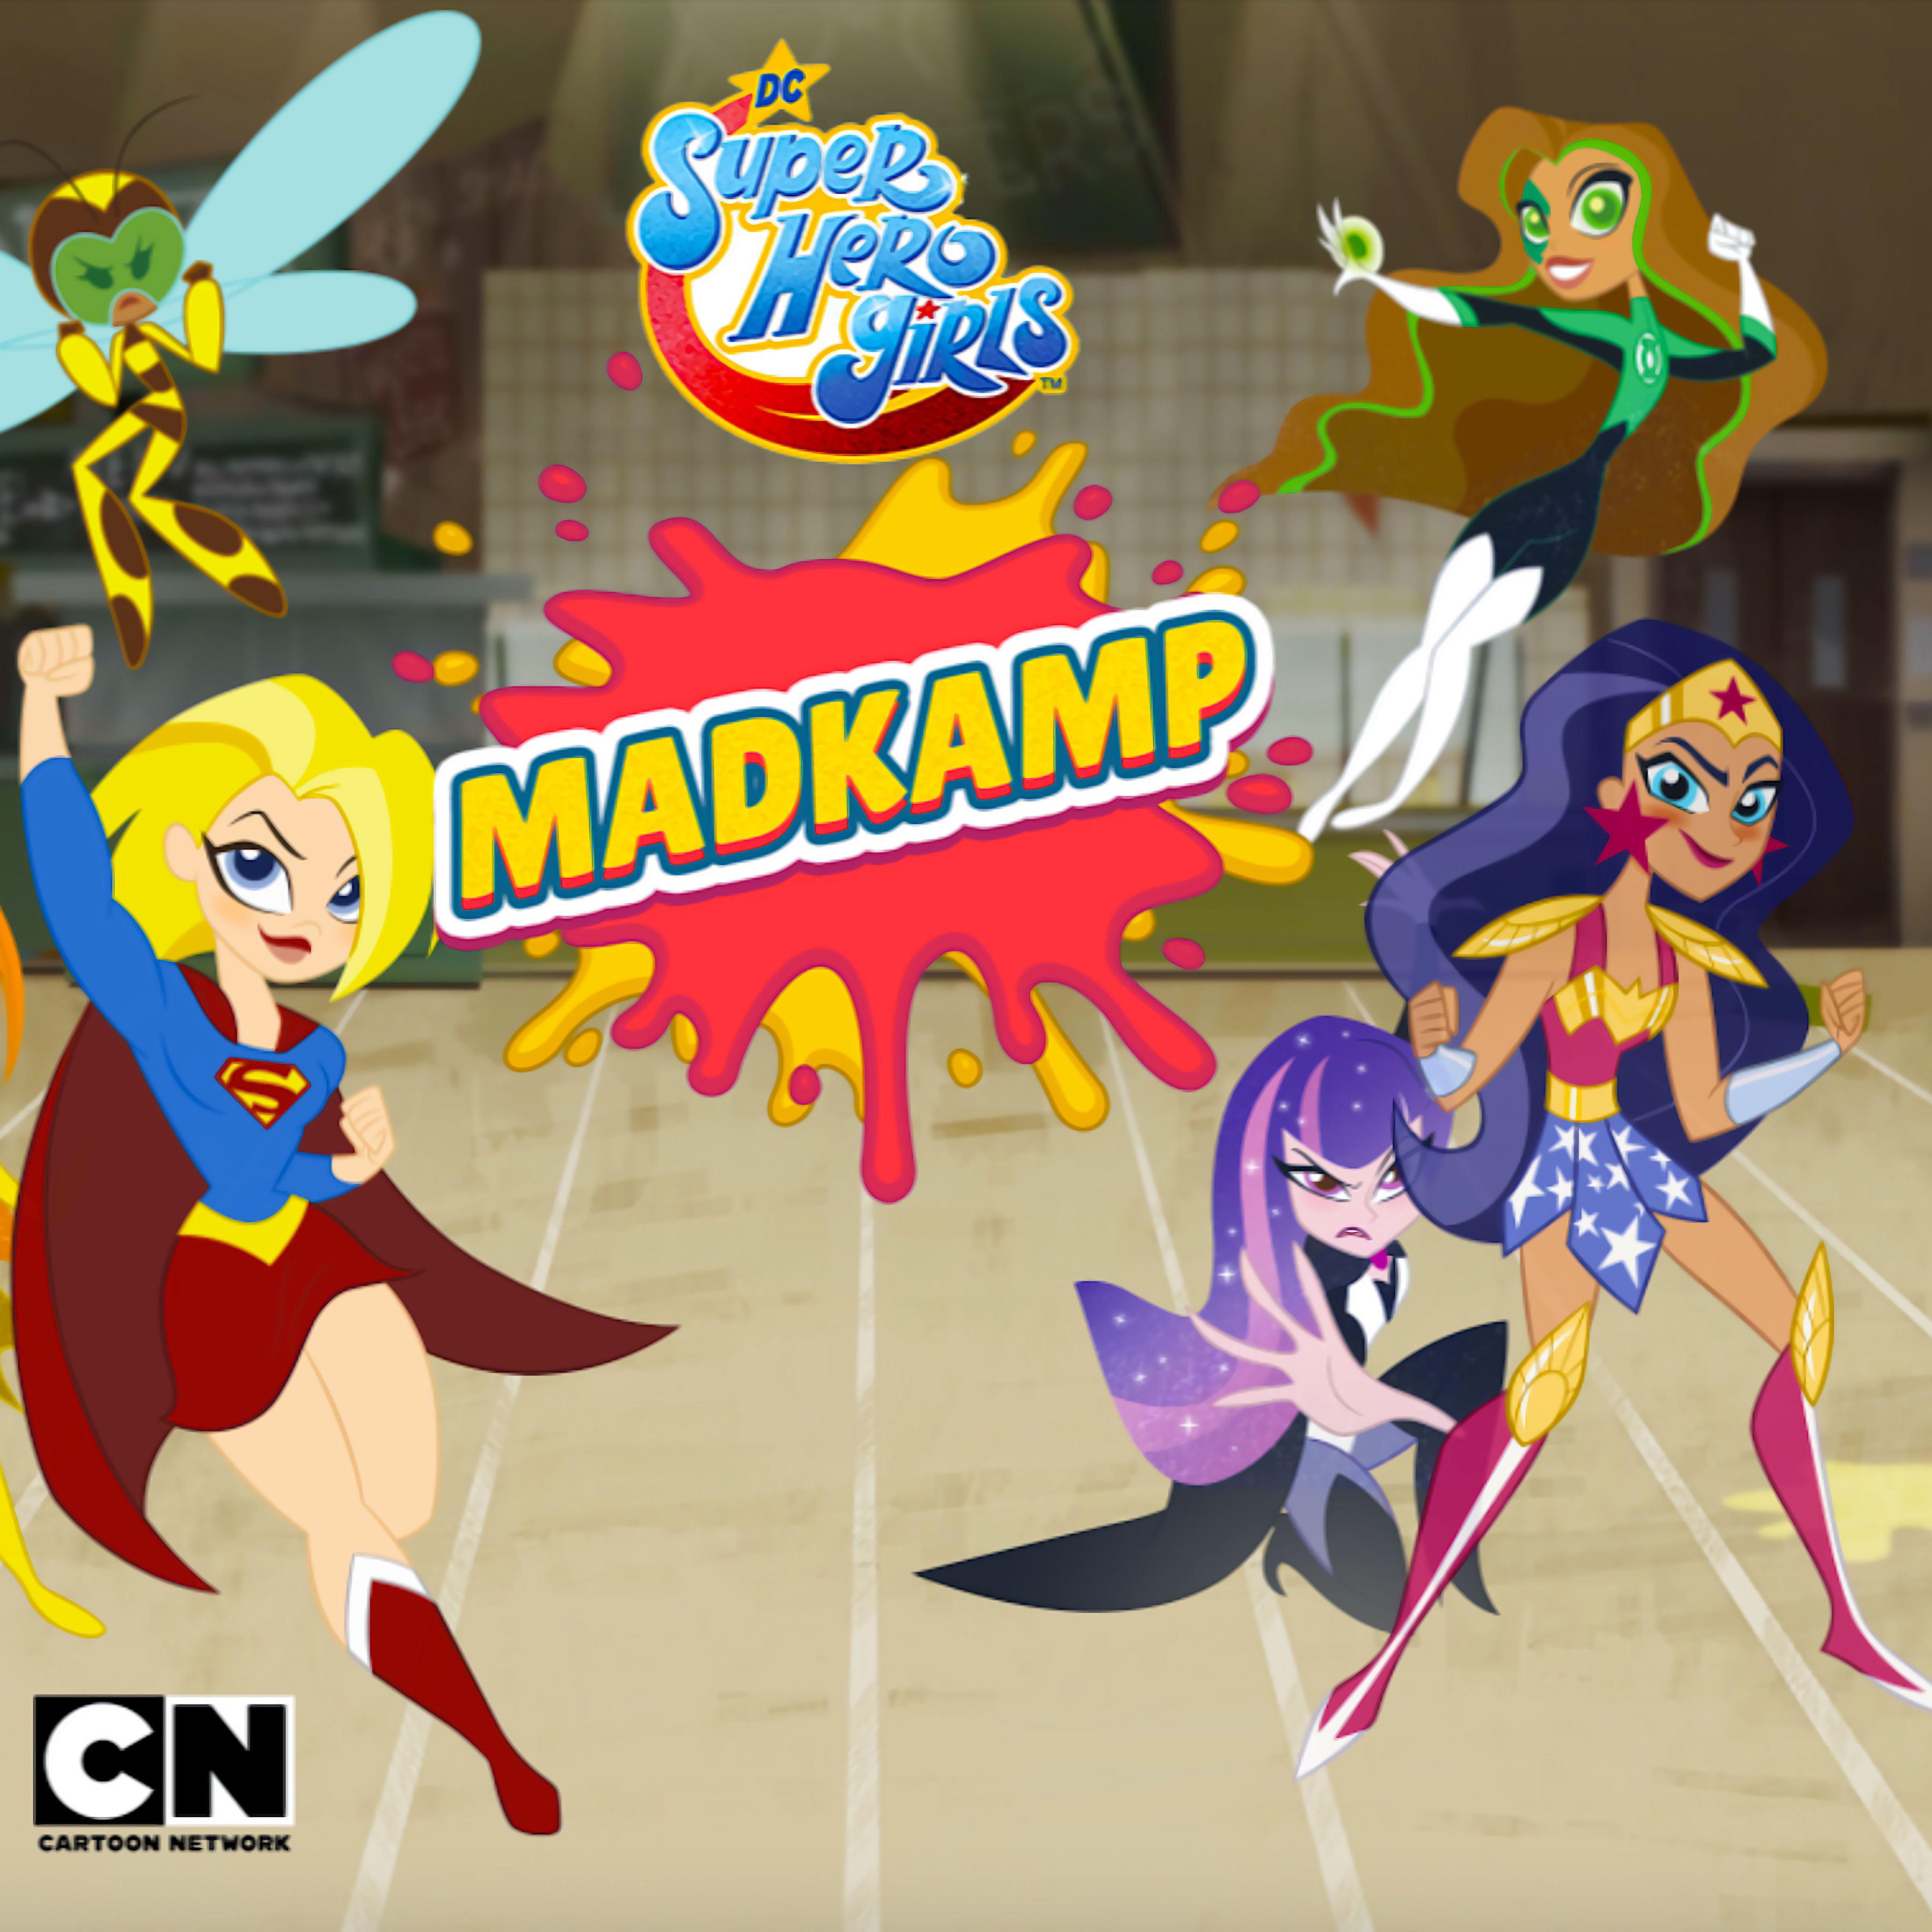 Madkamp - DC Super Hero Girls